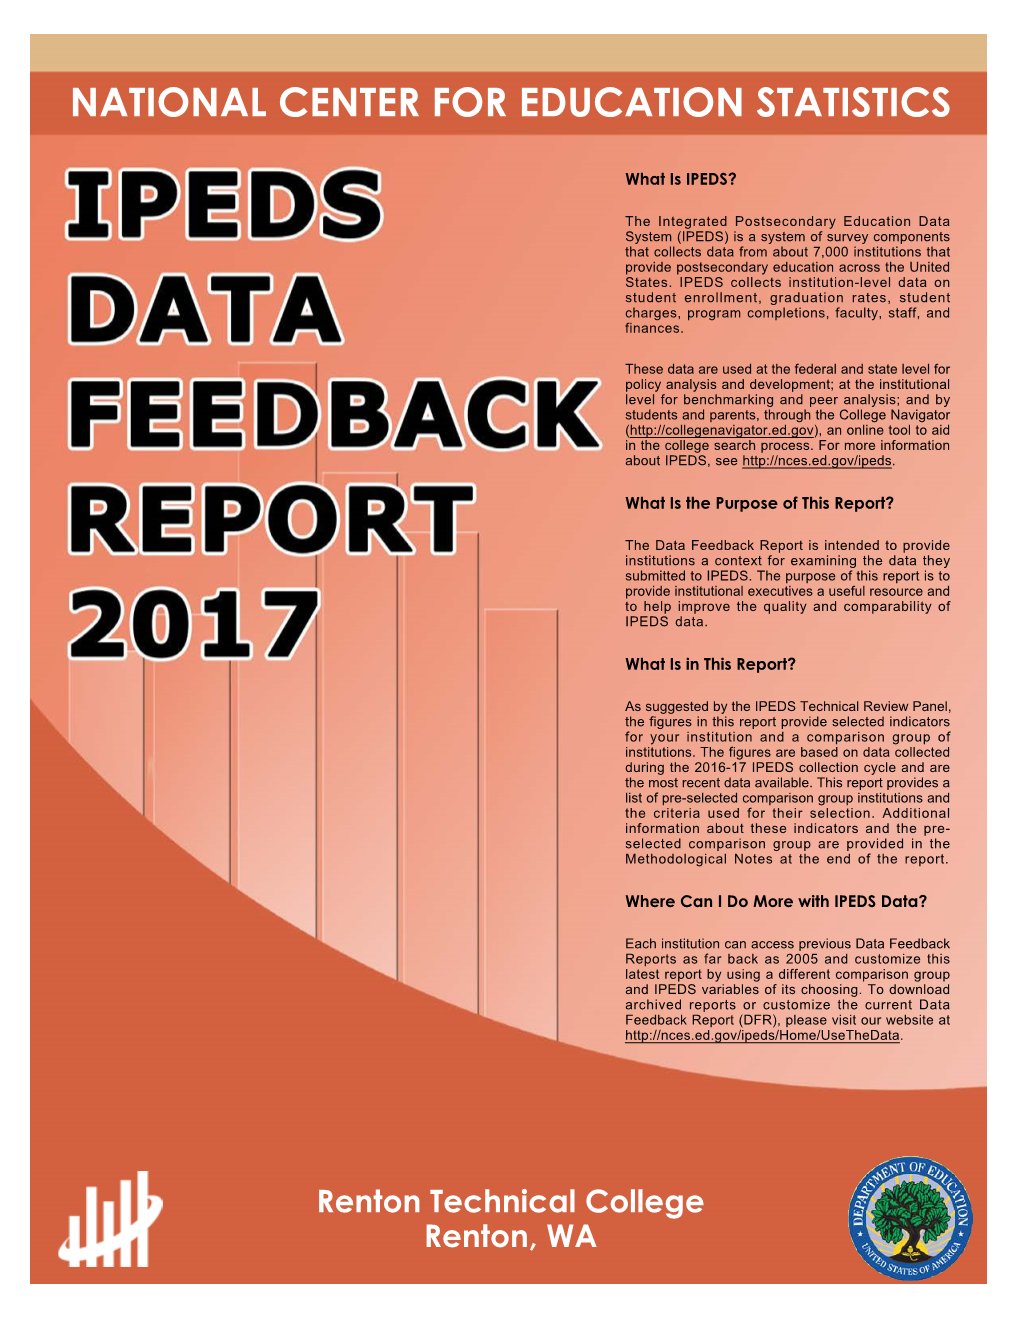 IPEDS Data Feedback Report 2017